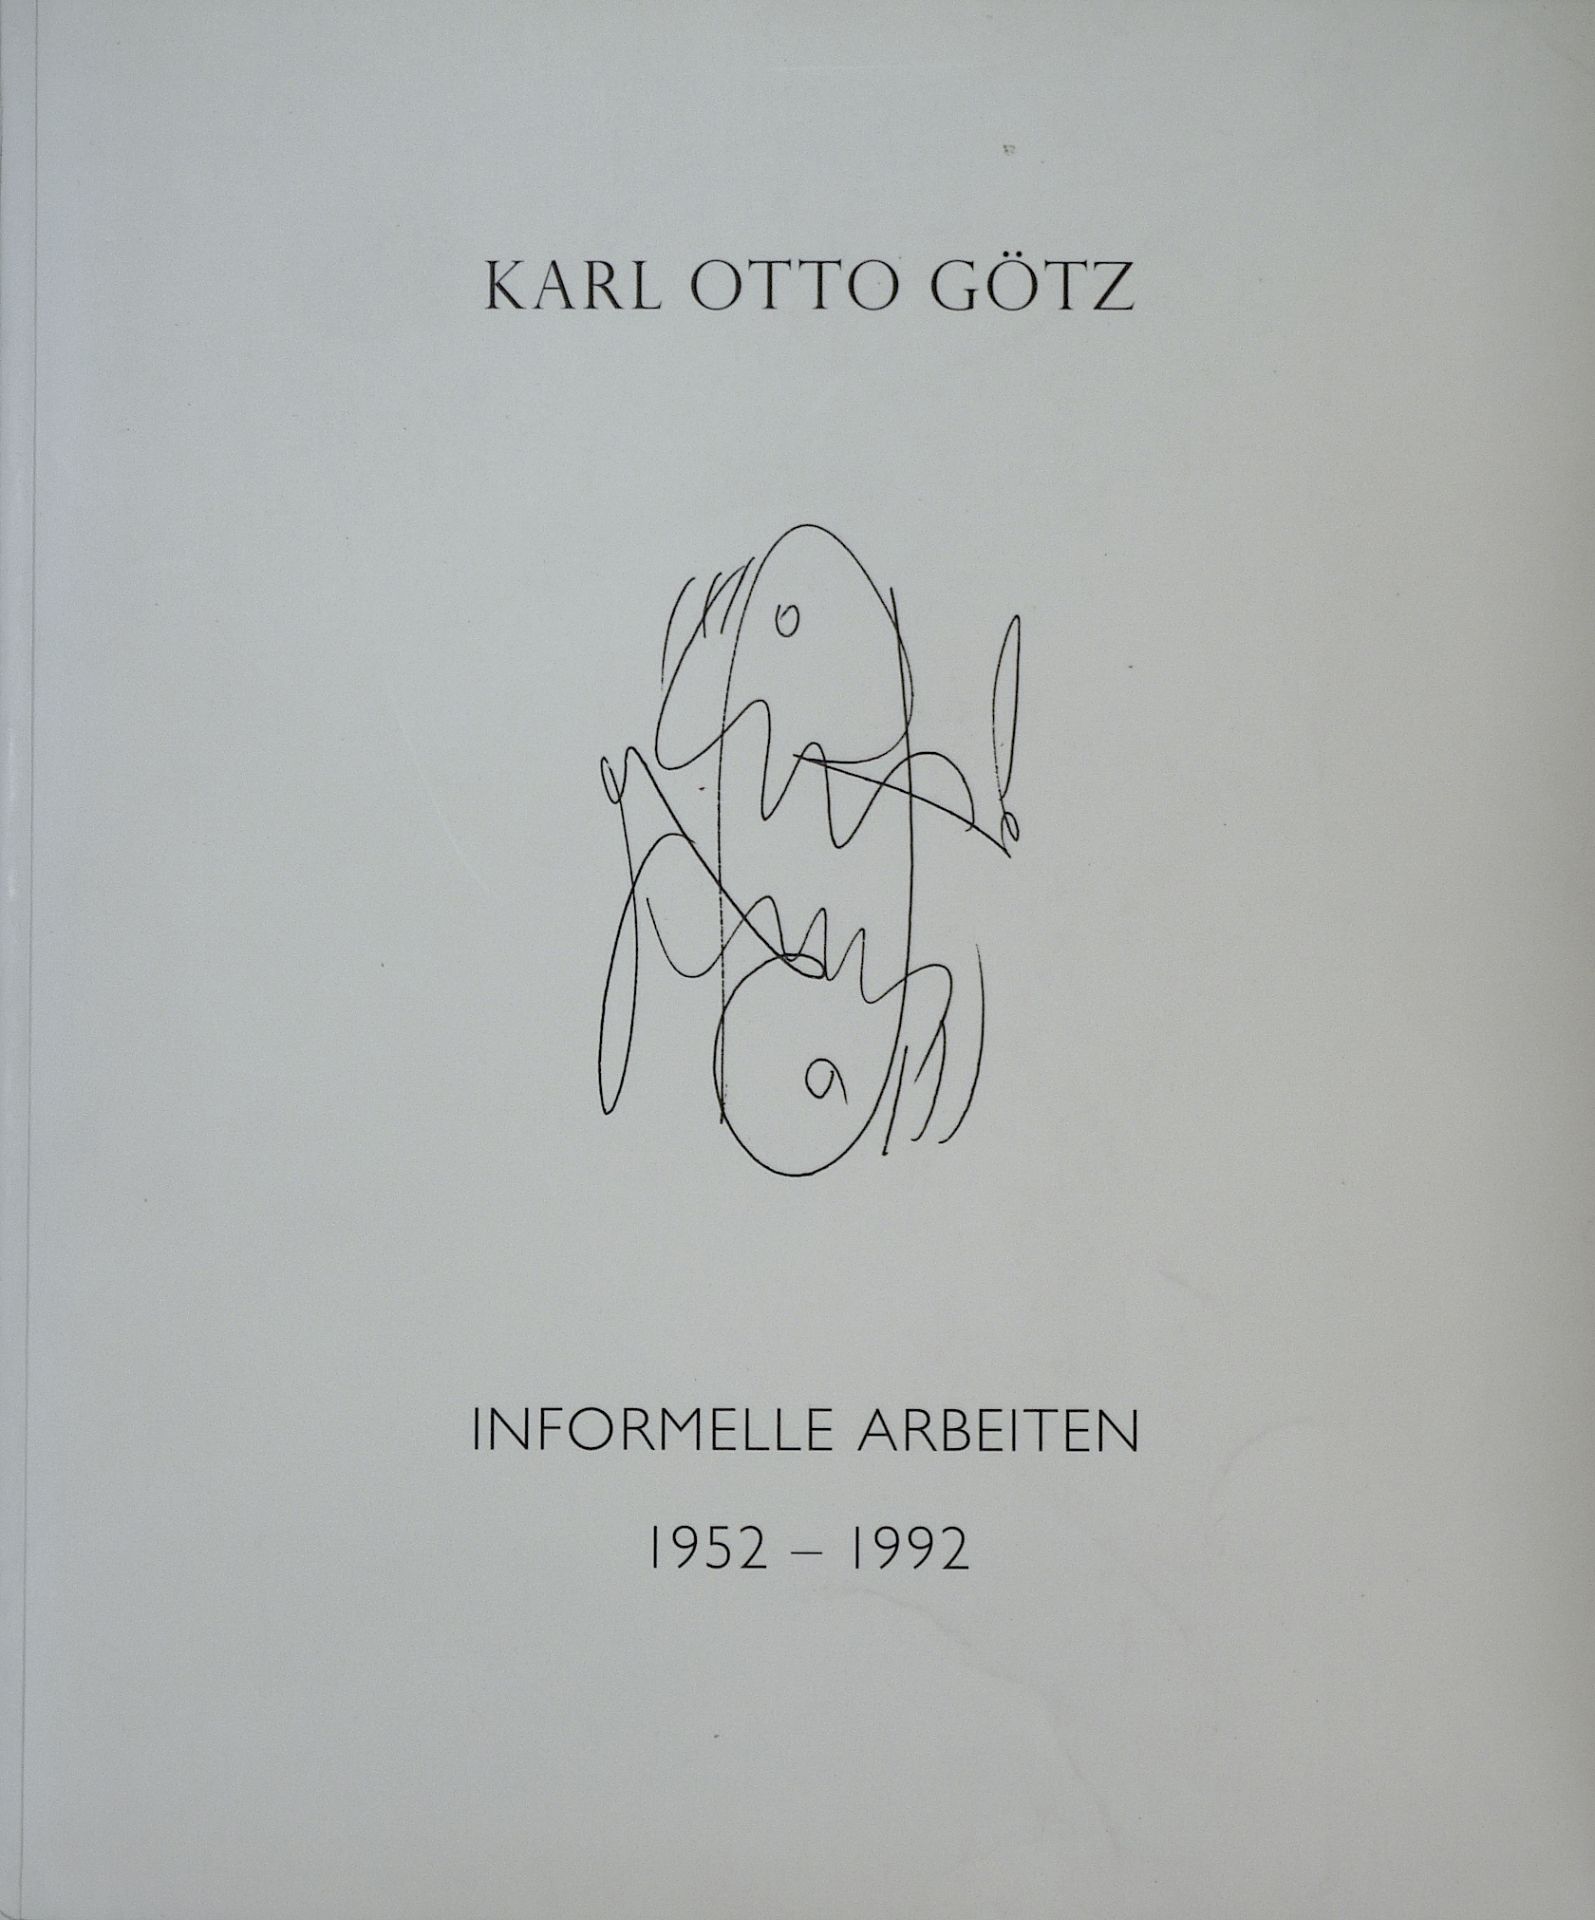 GÖTZ, KARL OTTO: "Informelle Arbeiten 1952-1992", 1993